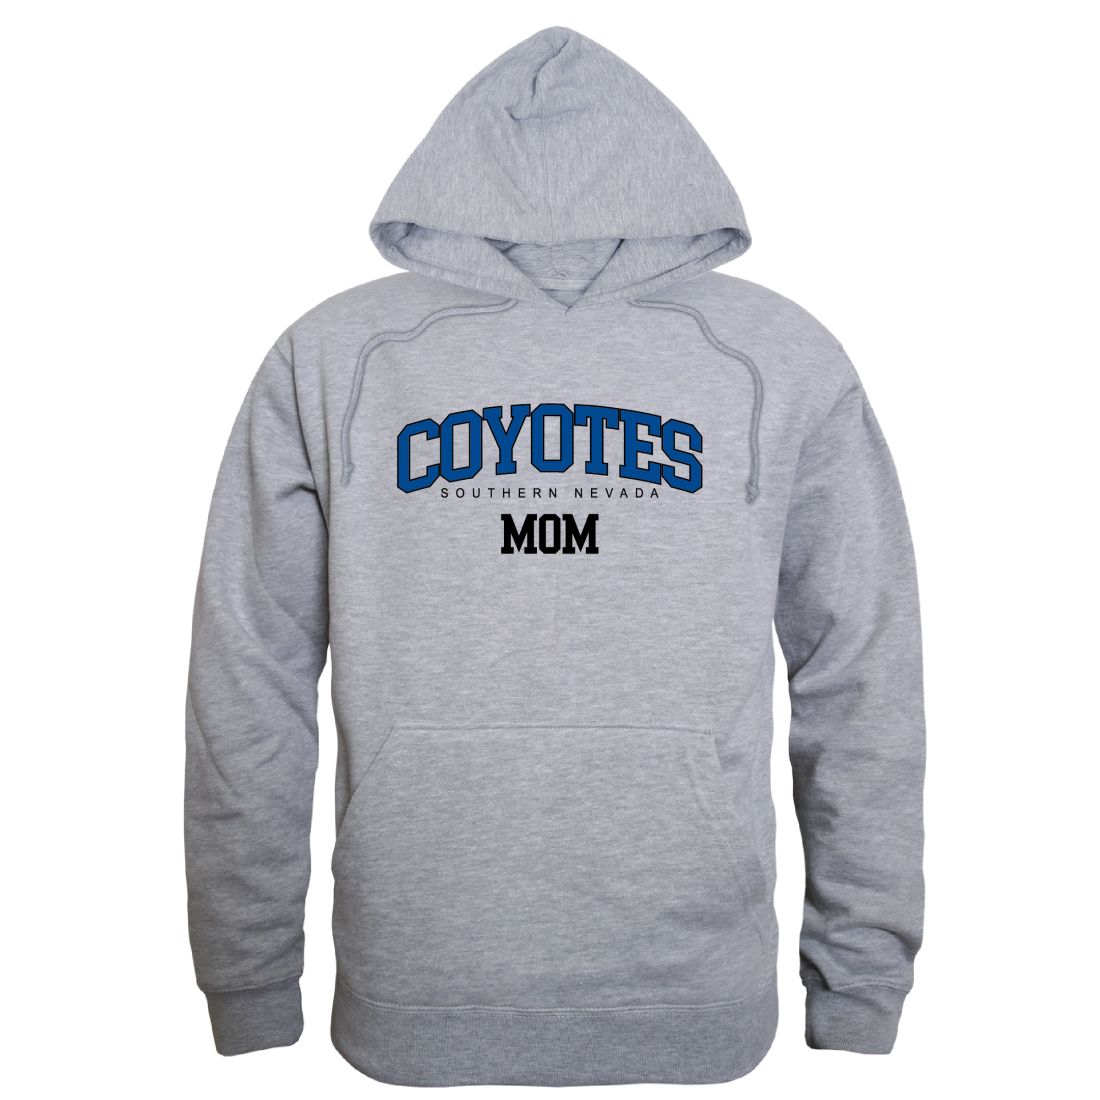 College of Southern Nevada Coyotes Mom Fleece Hoodie Sweatshirts